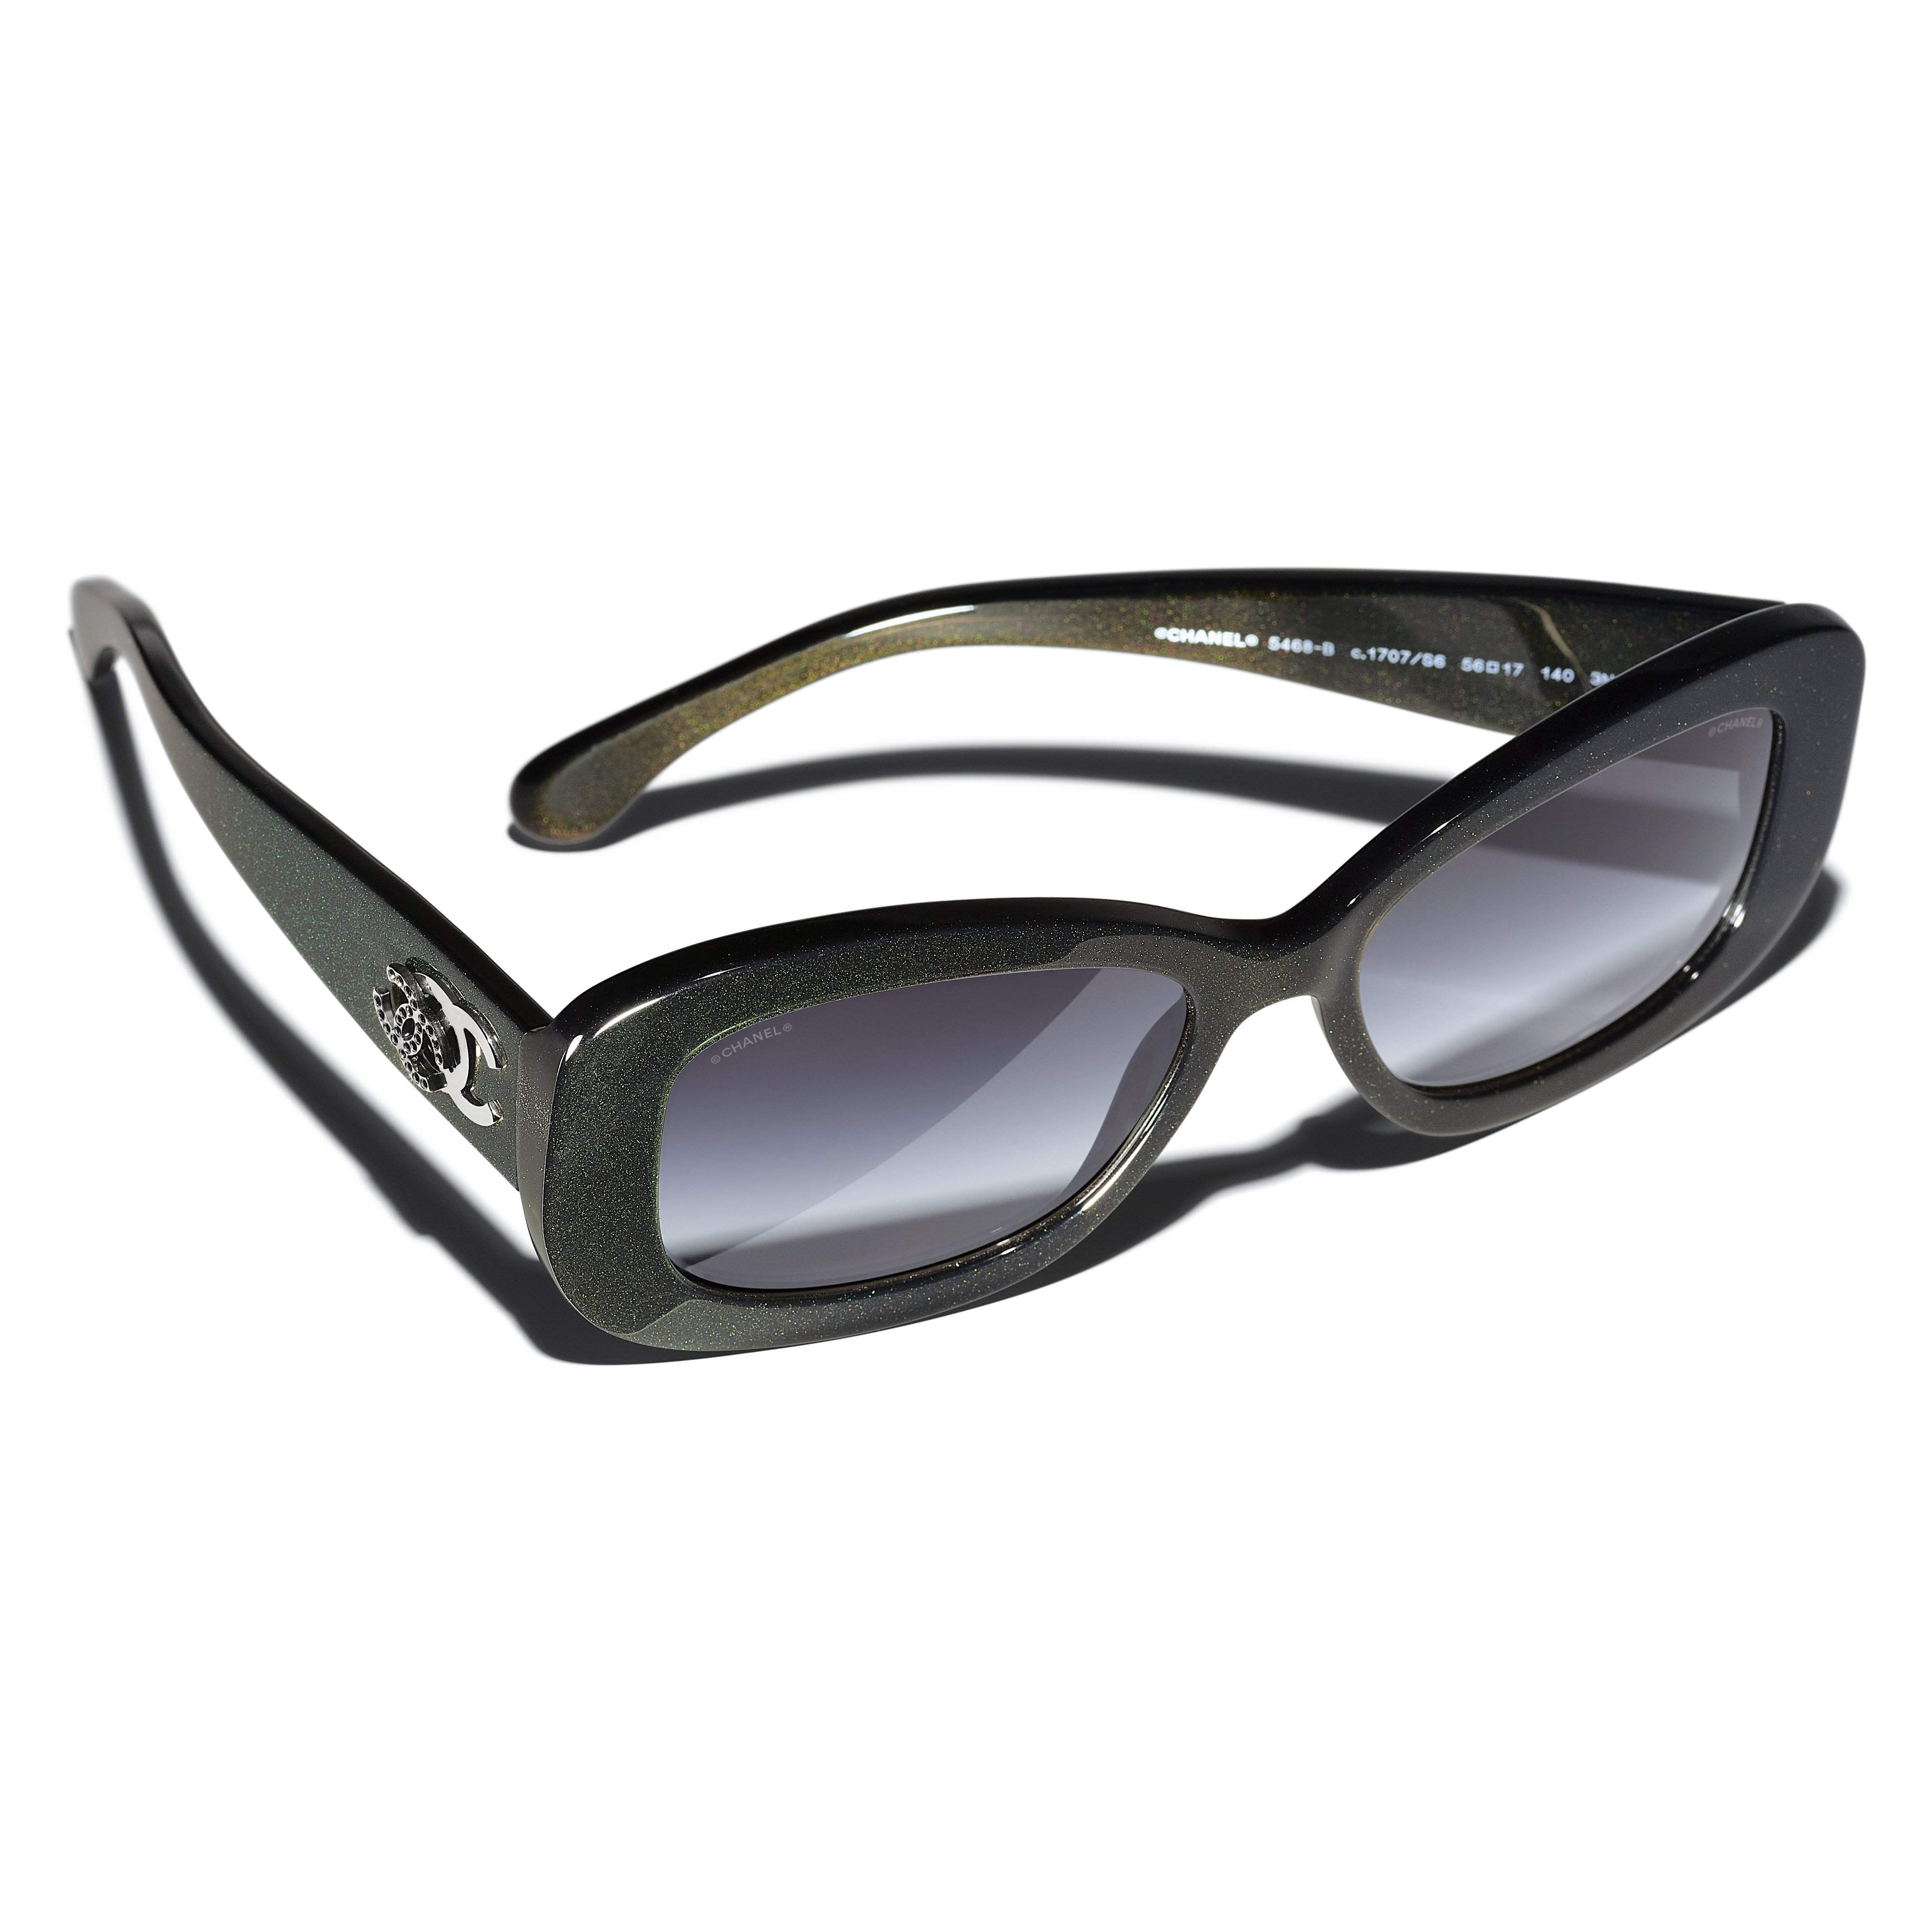 Sunglasses CHANEL CH5488 1702/8E 52-19 Green in stock, Price 662,50 €